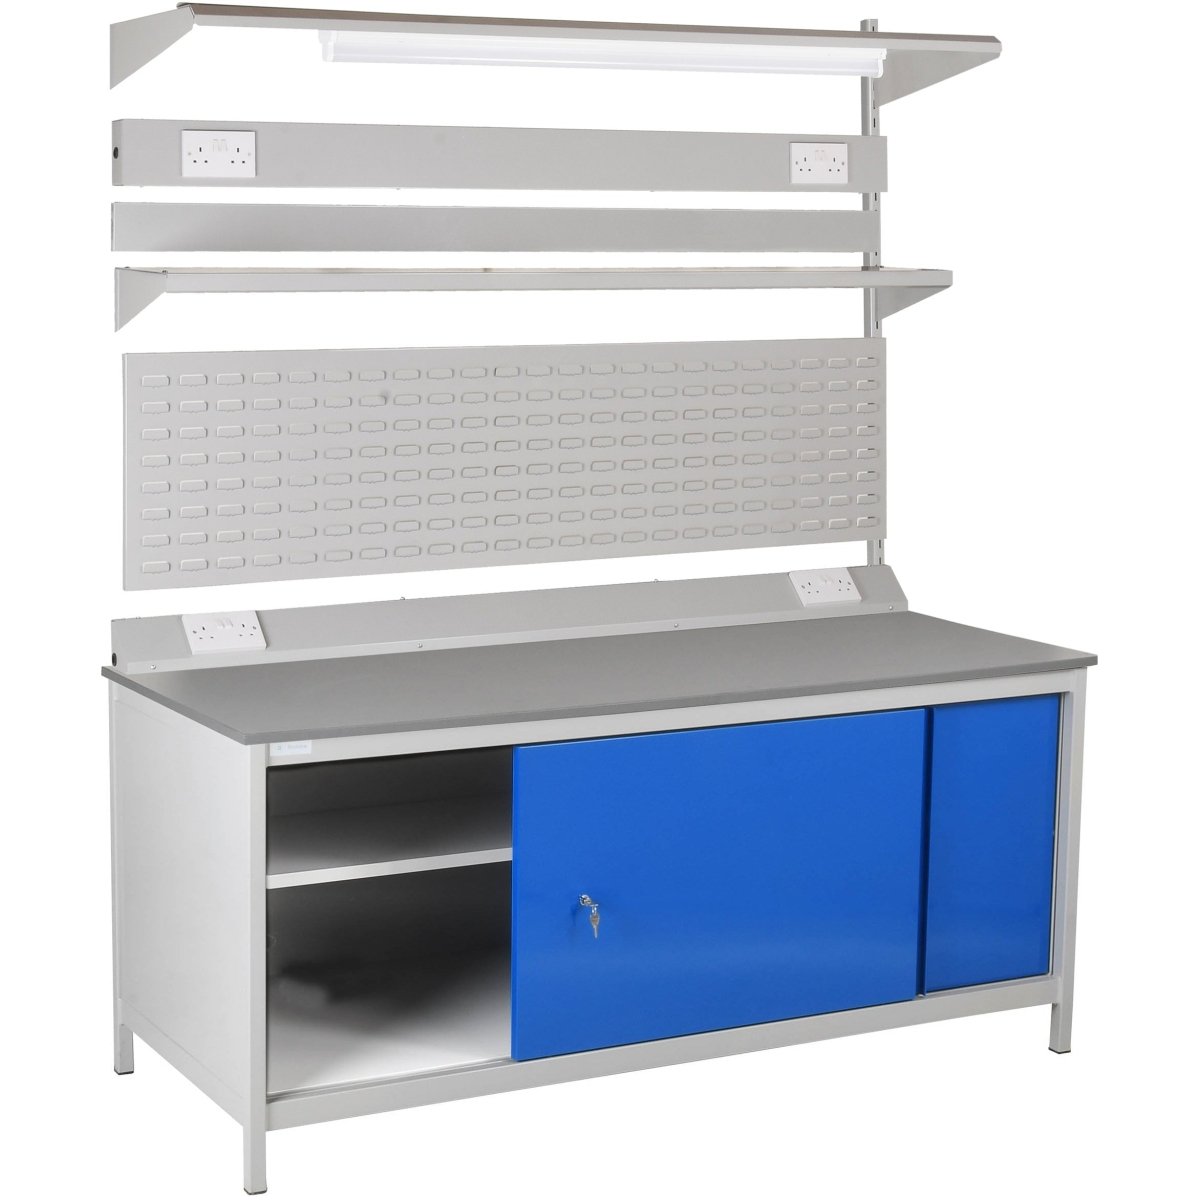 Redditek Cupboard Workbench - Warehouse Storage Products